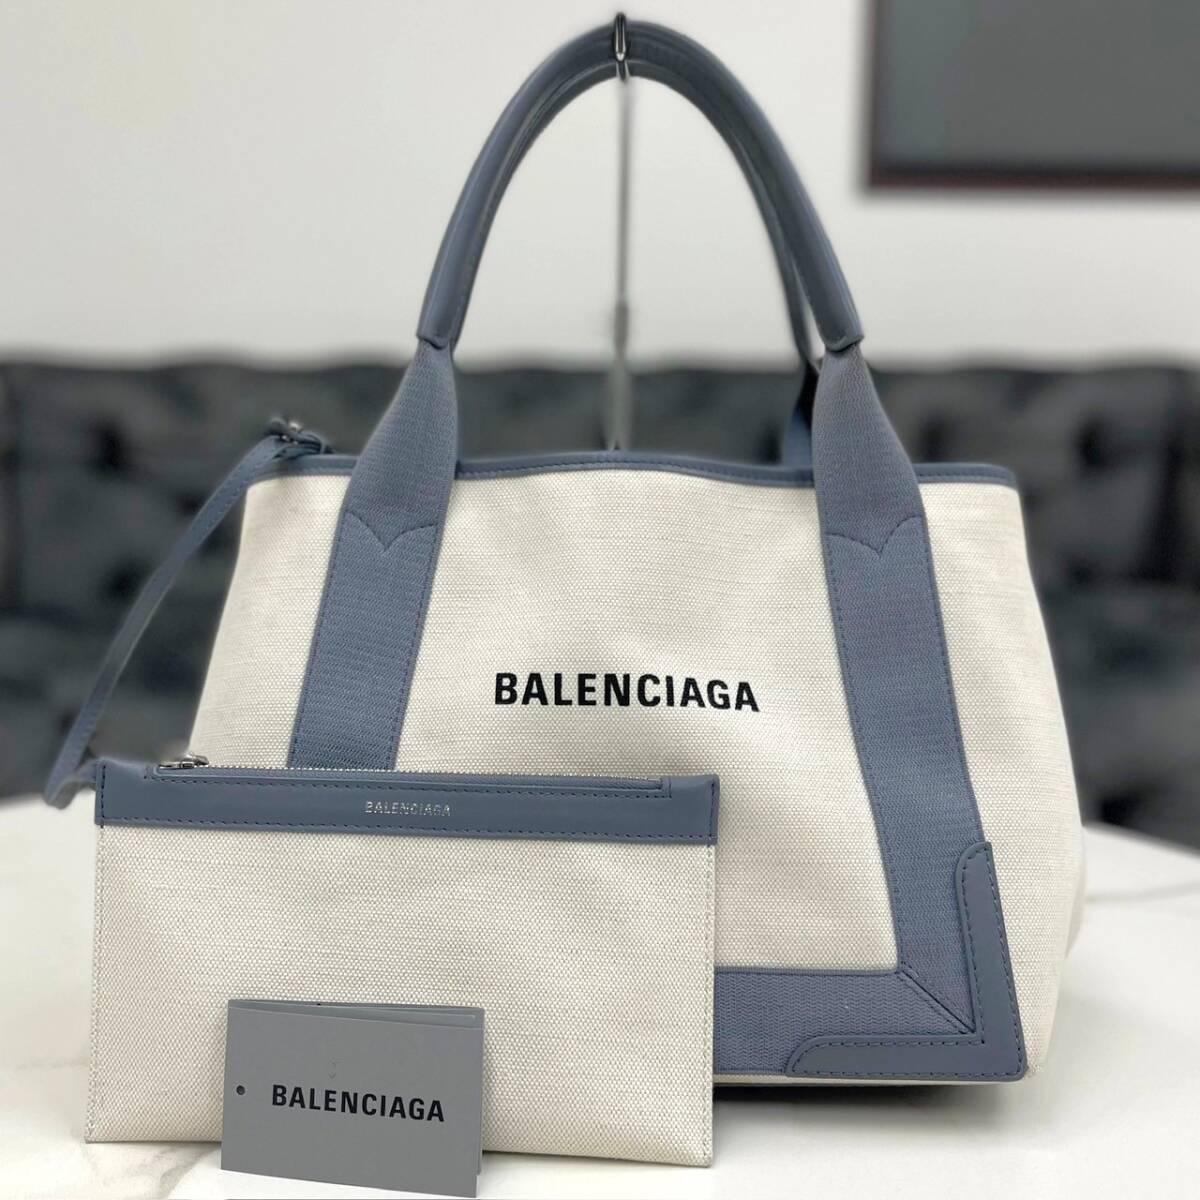  прекрасный товар * Balenciaga темно-синий бегемот sS серый ручная сумочка 2019 год 